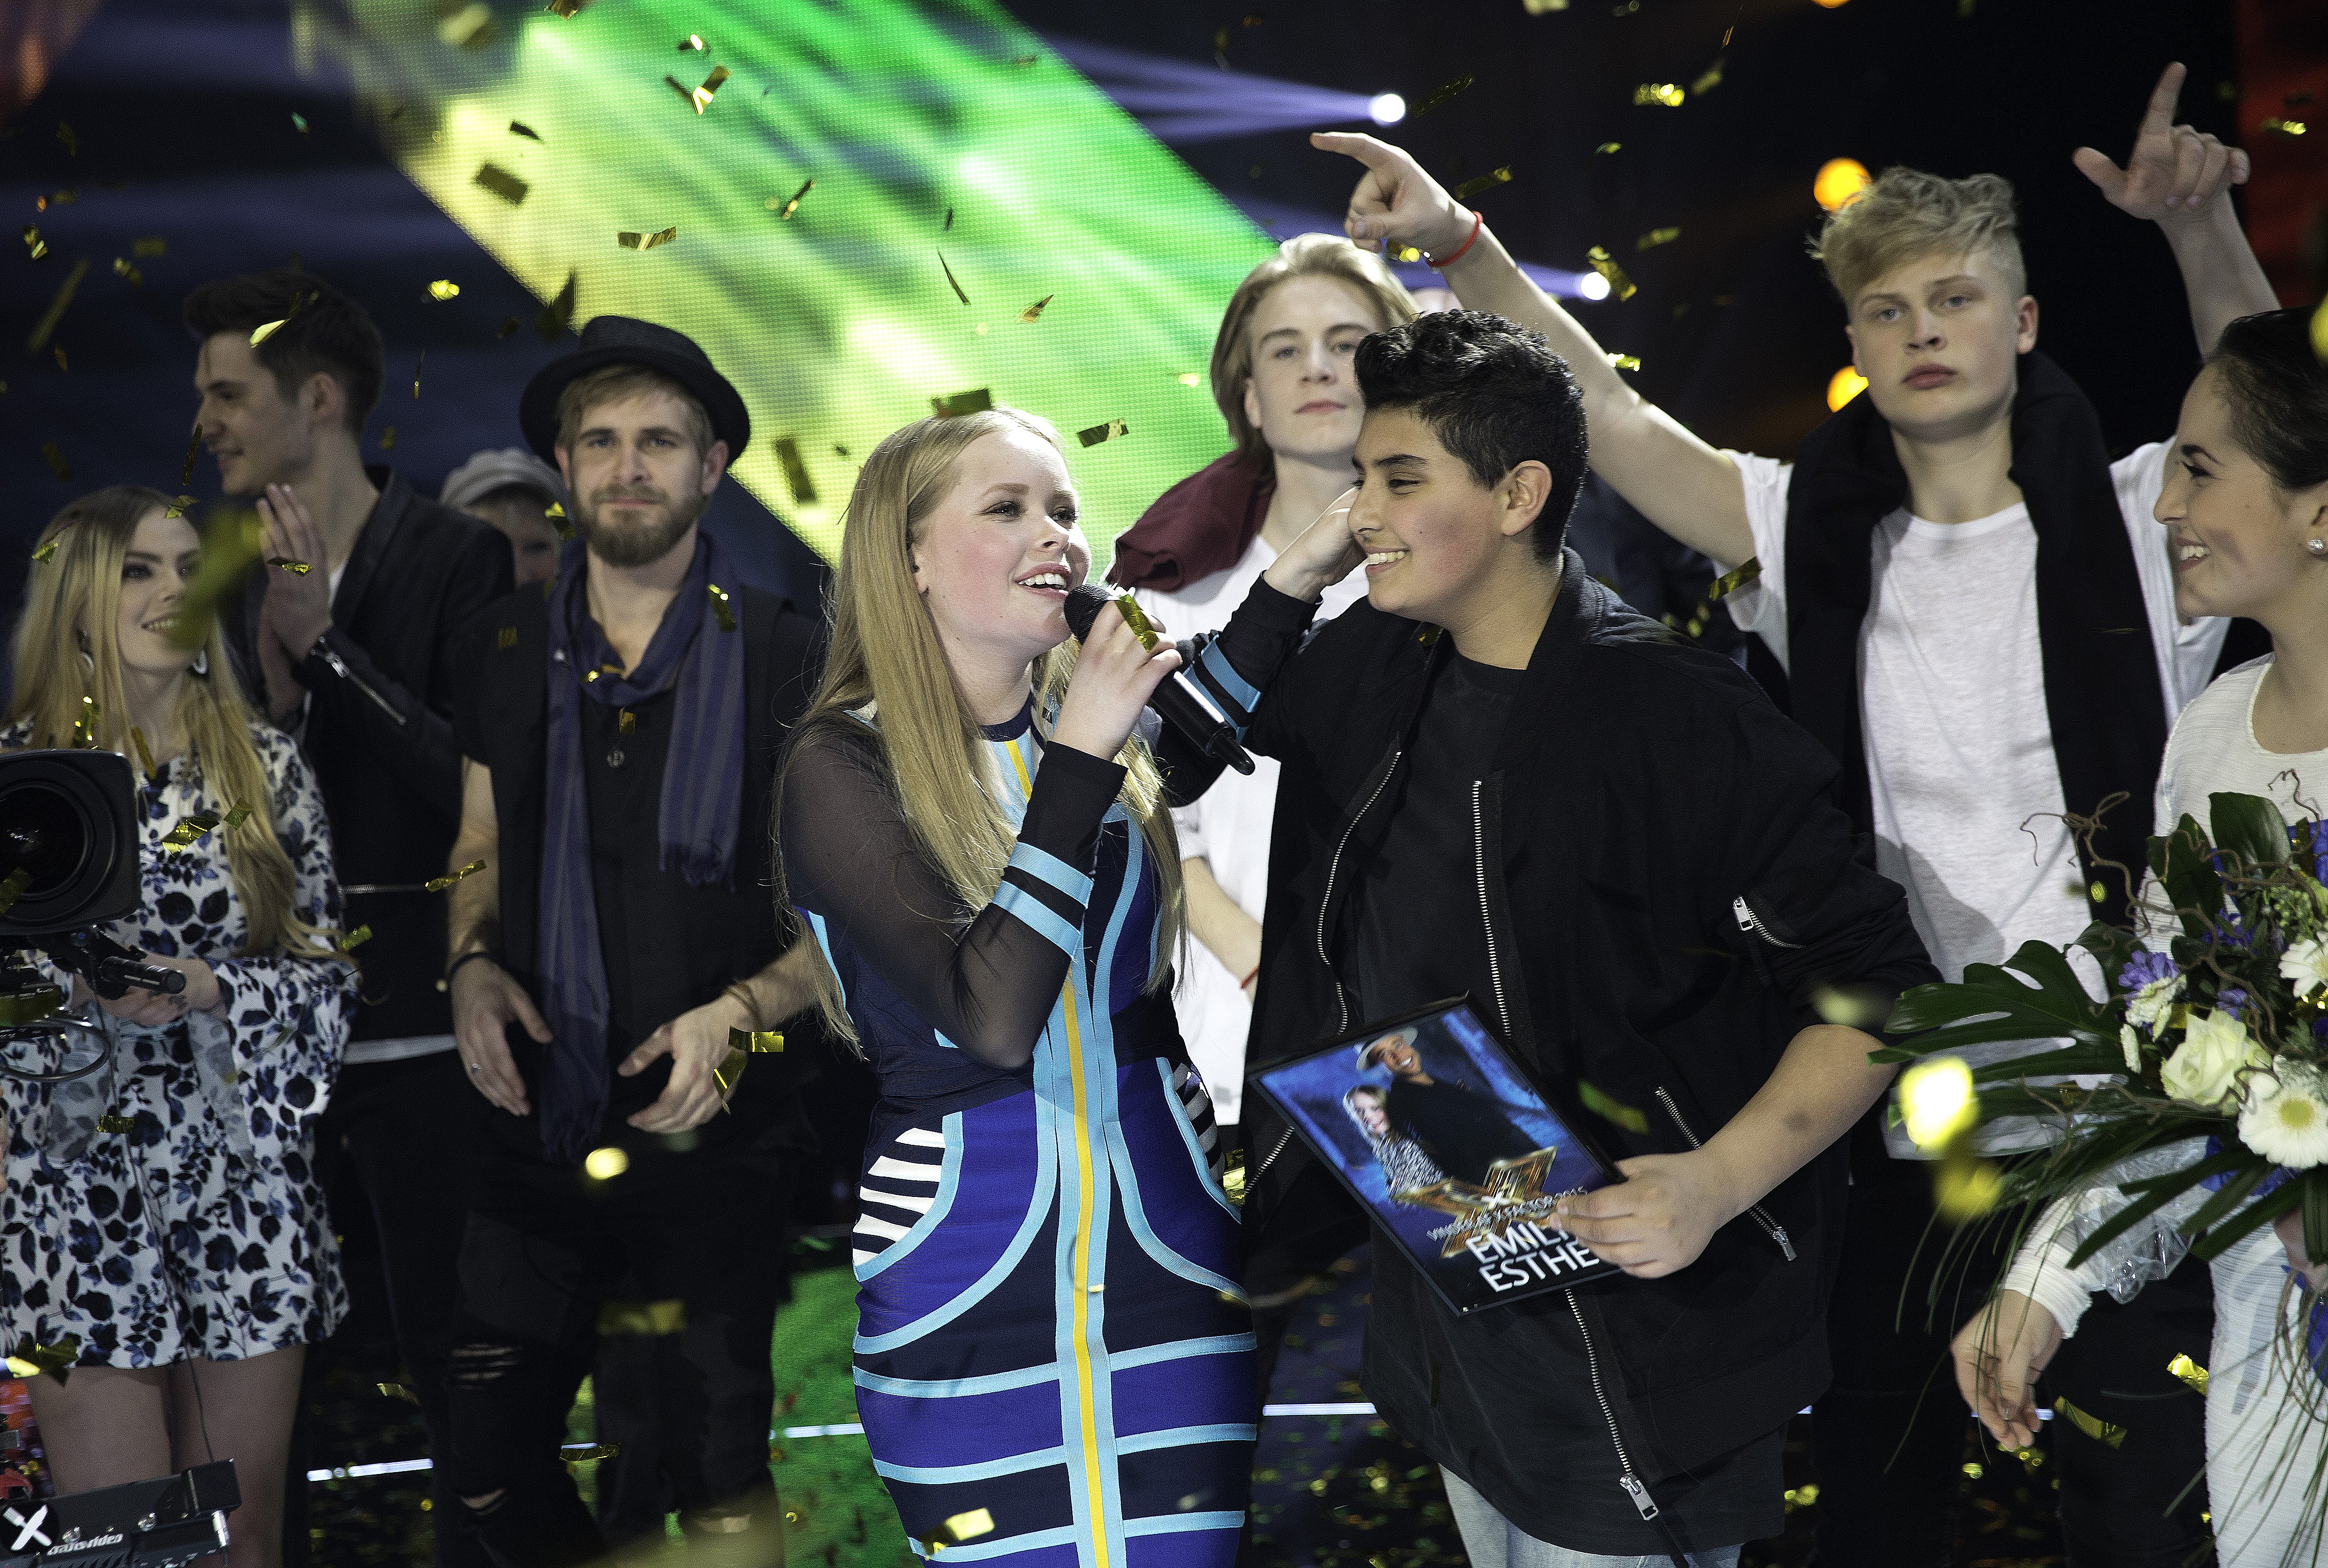 At blokere bifald Hospital 15-årige Emilie Esther vinder X Factor | TV2 Nord